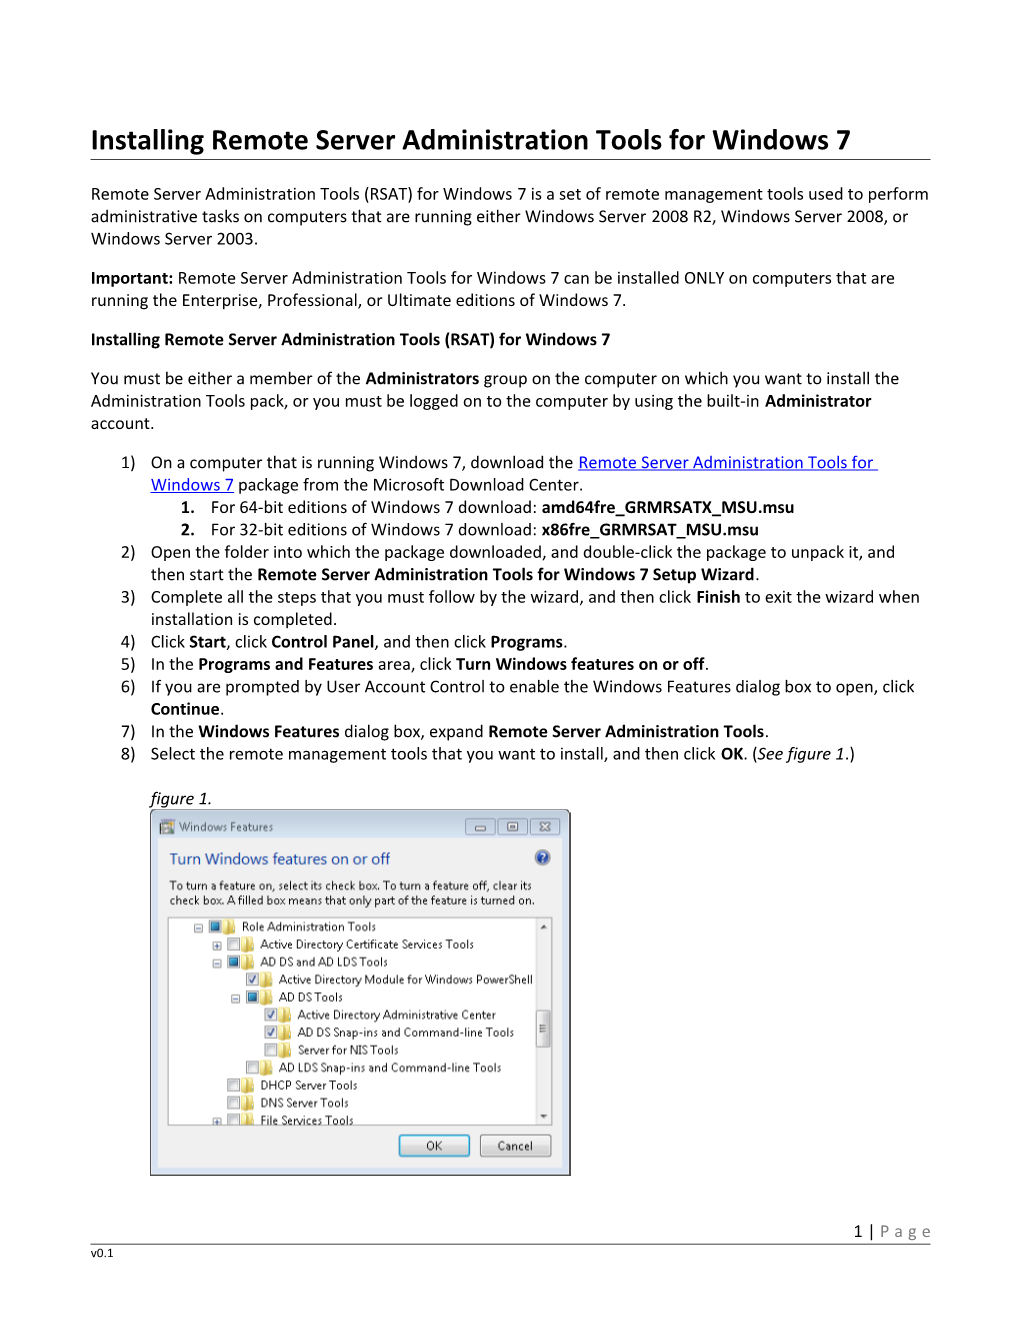 Installing RSAT Tools for Windows 7V01